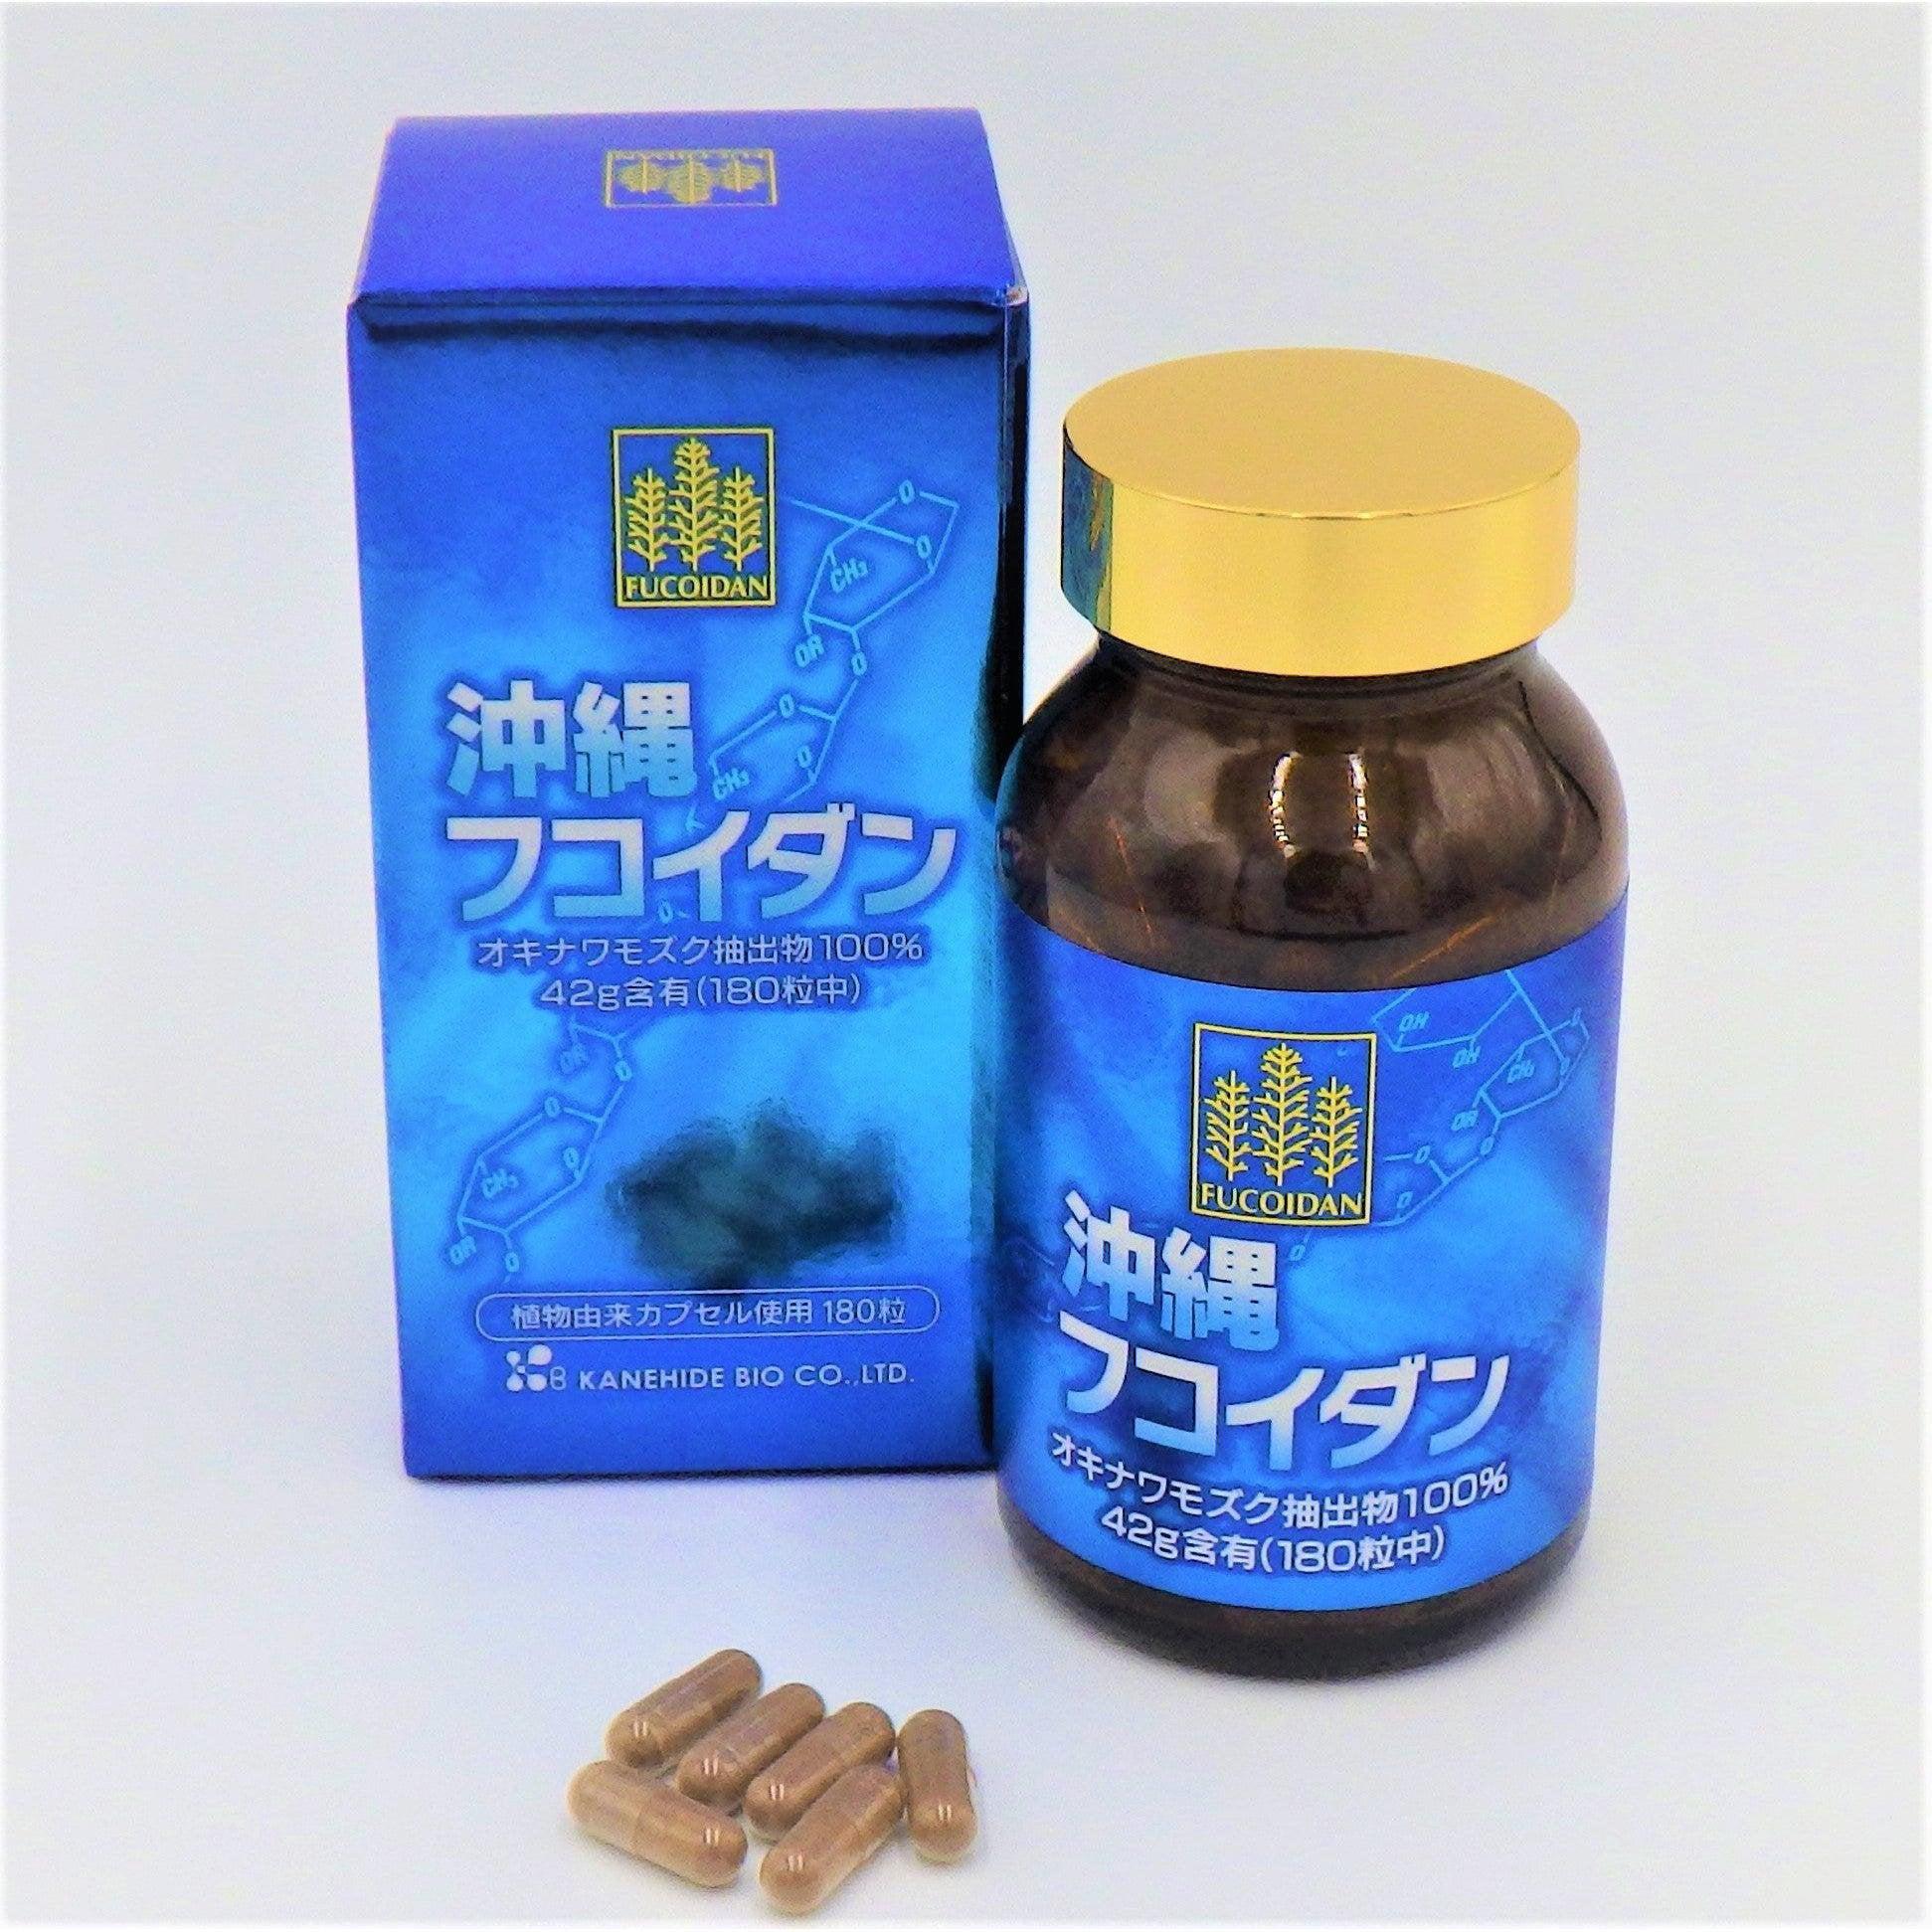 Kanehide Bio Okinawa Fucoidan Supplement 180 Capsules